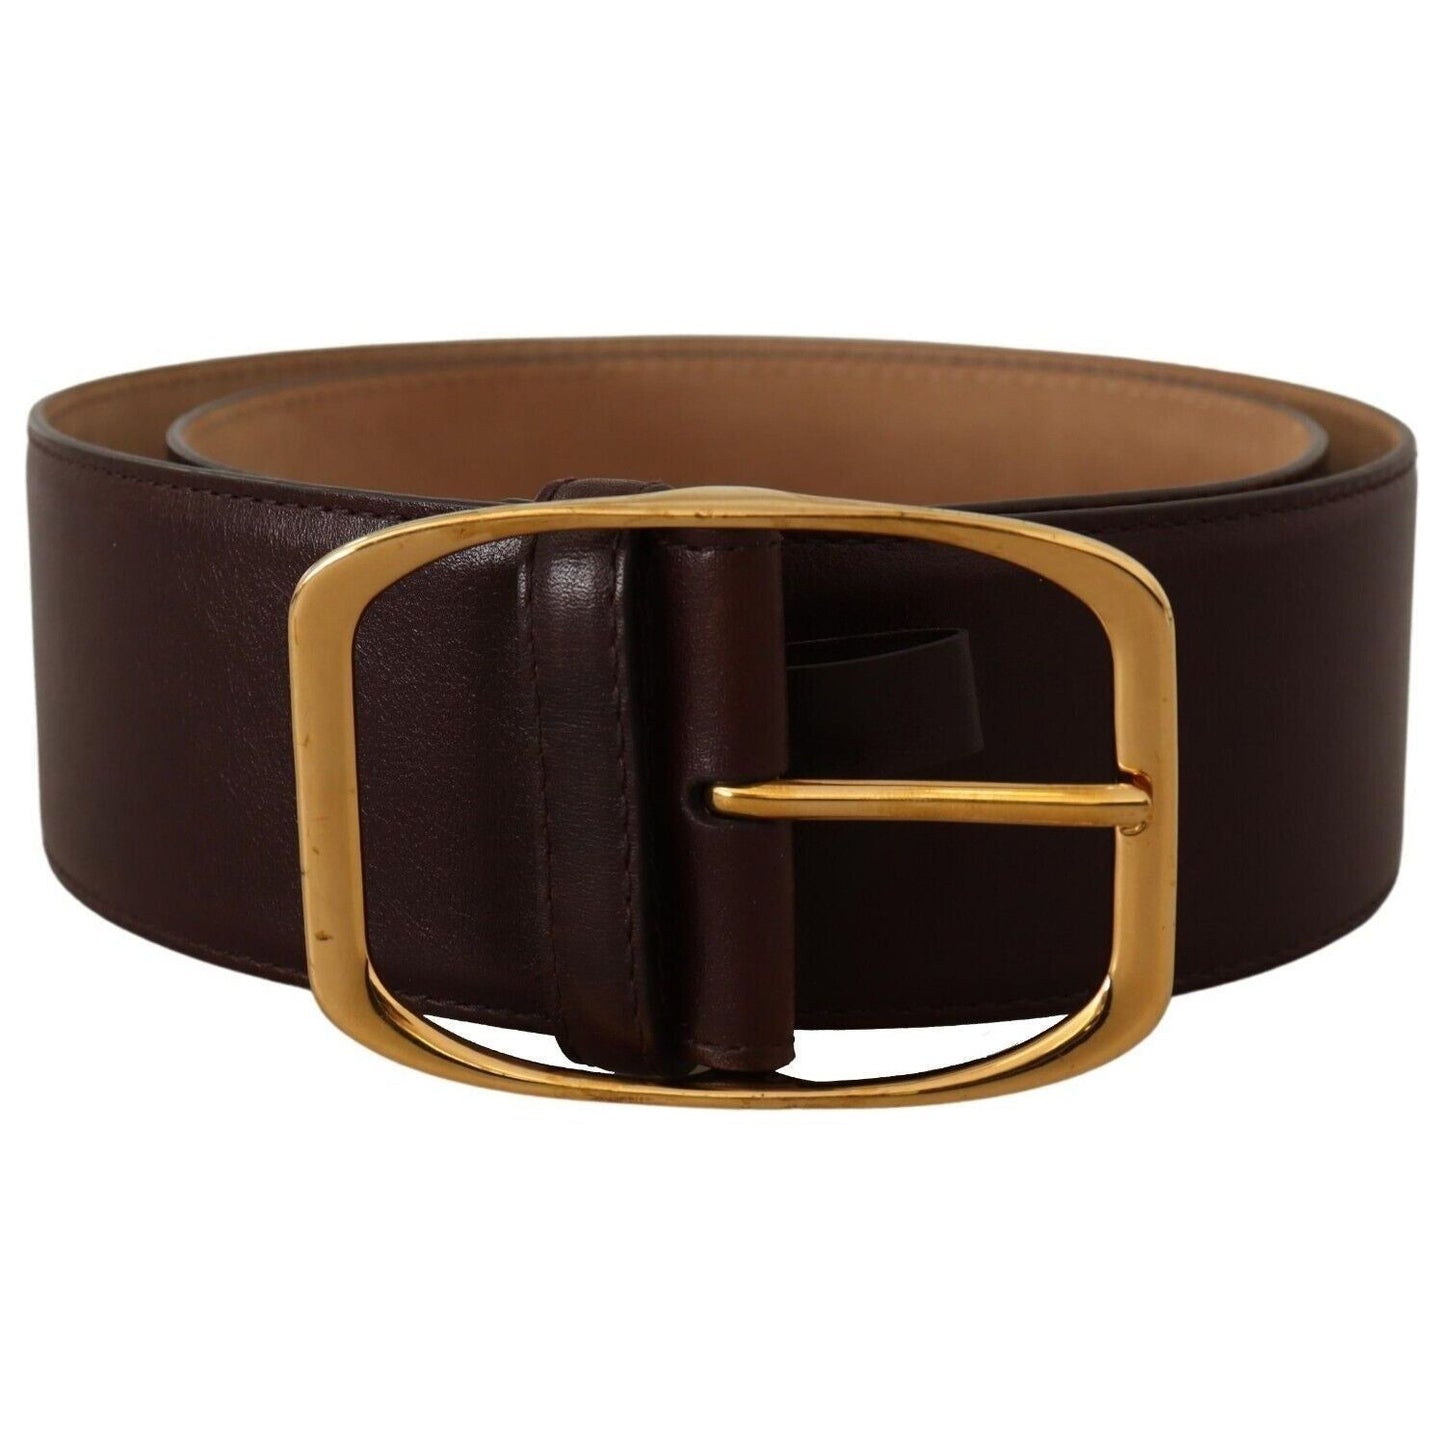 Dolce & Gabbana Elegant Dark Brown Leather Belt with Gold Buckle dark-brown-leather-gold-metal-buckle-belt-2